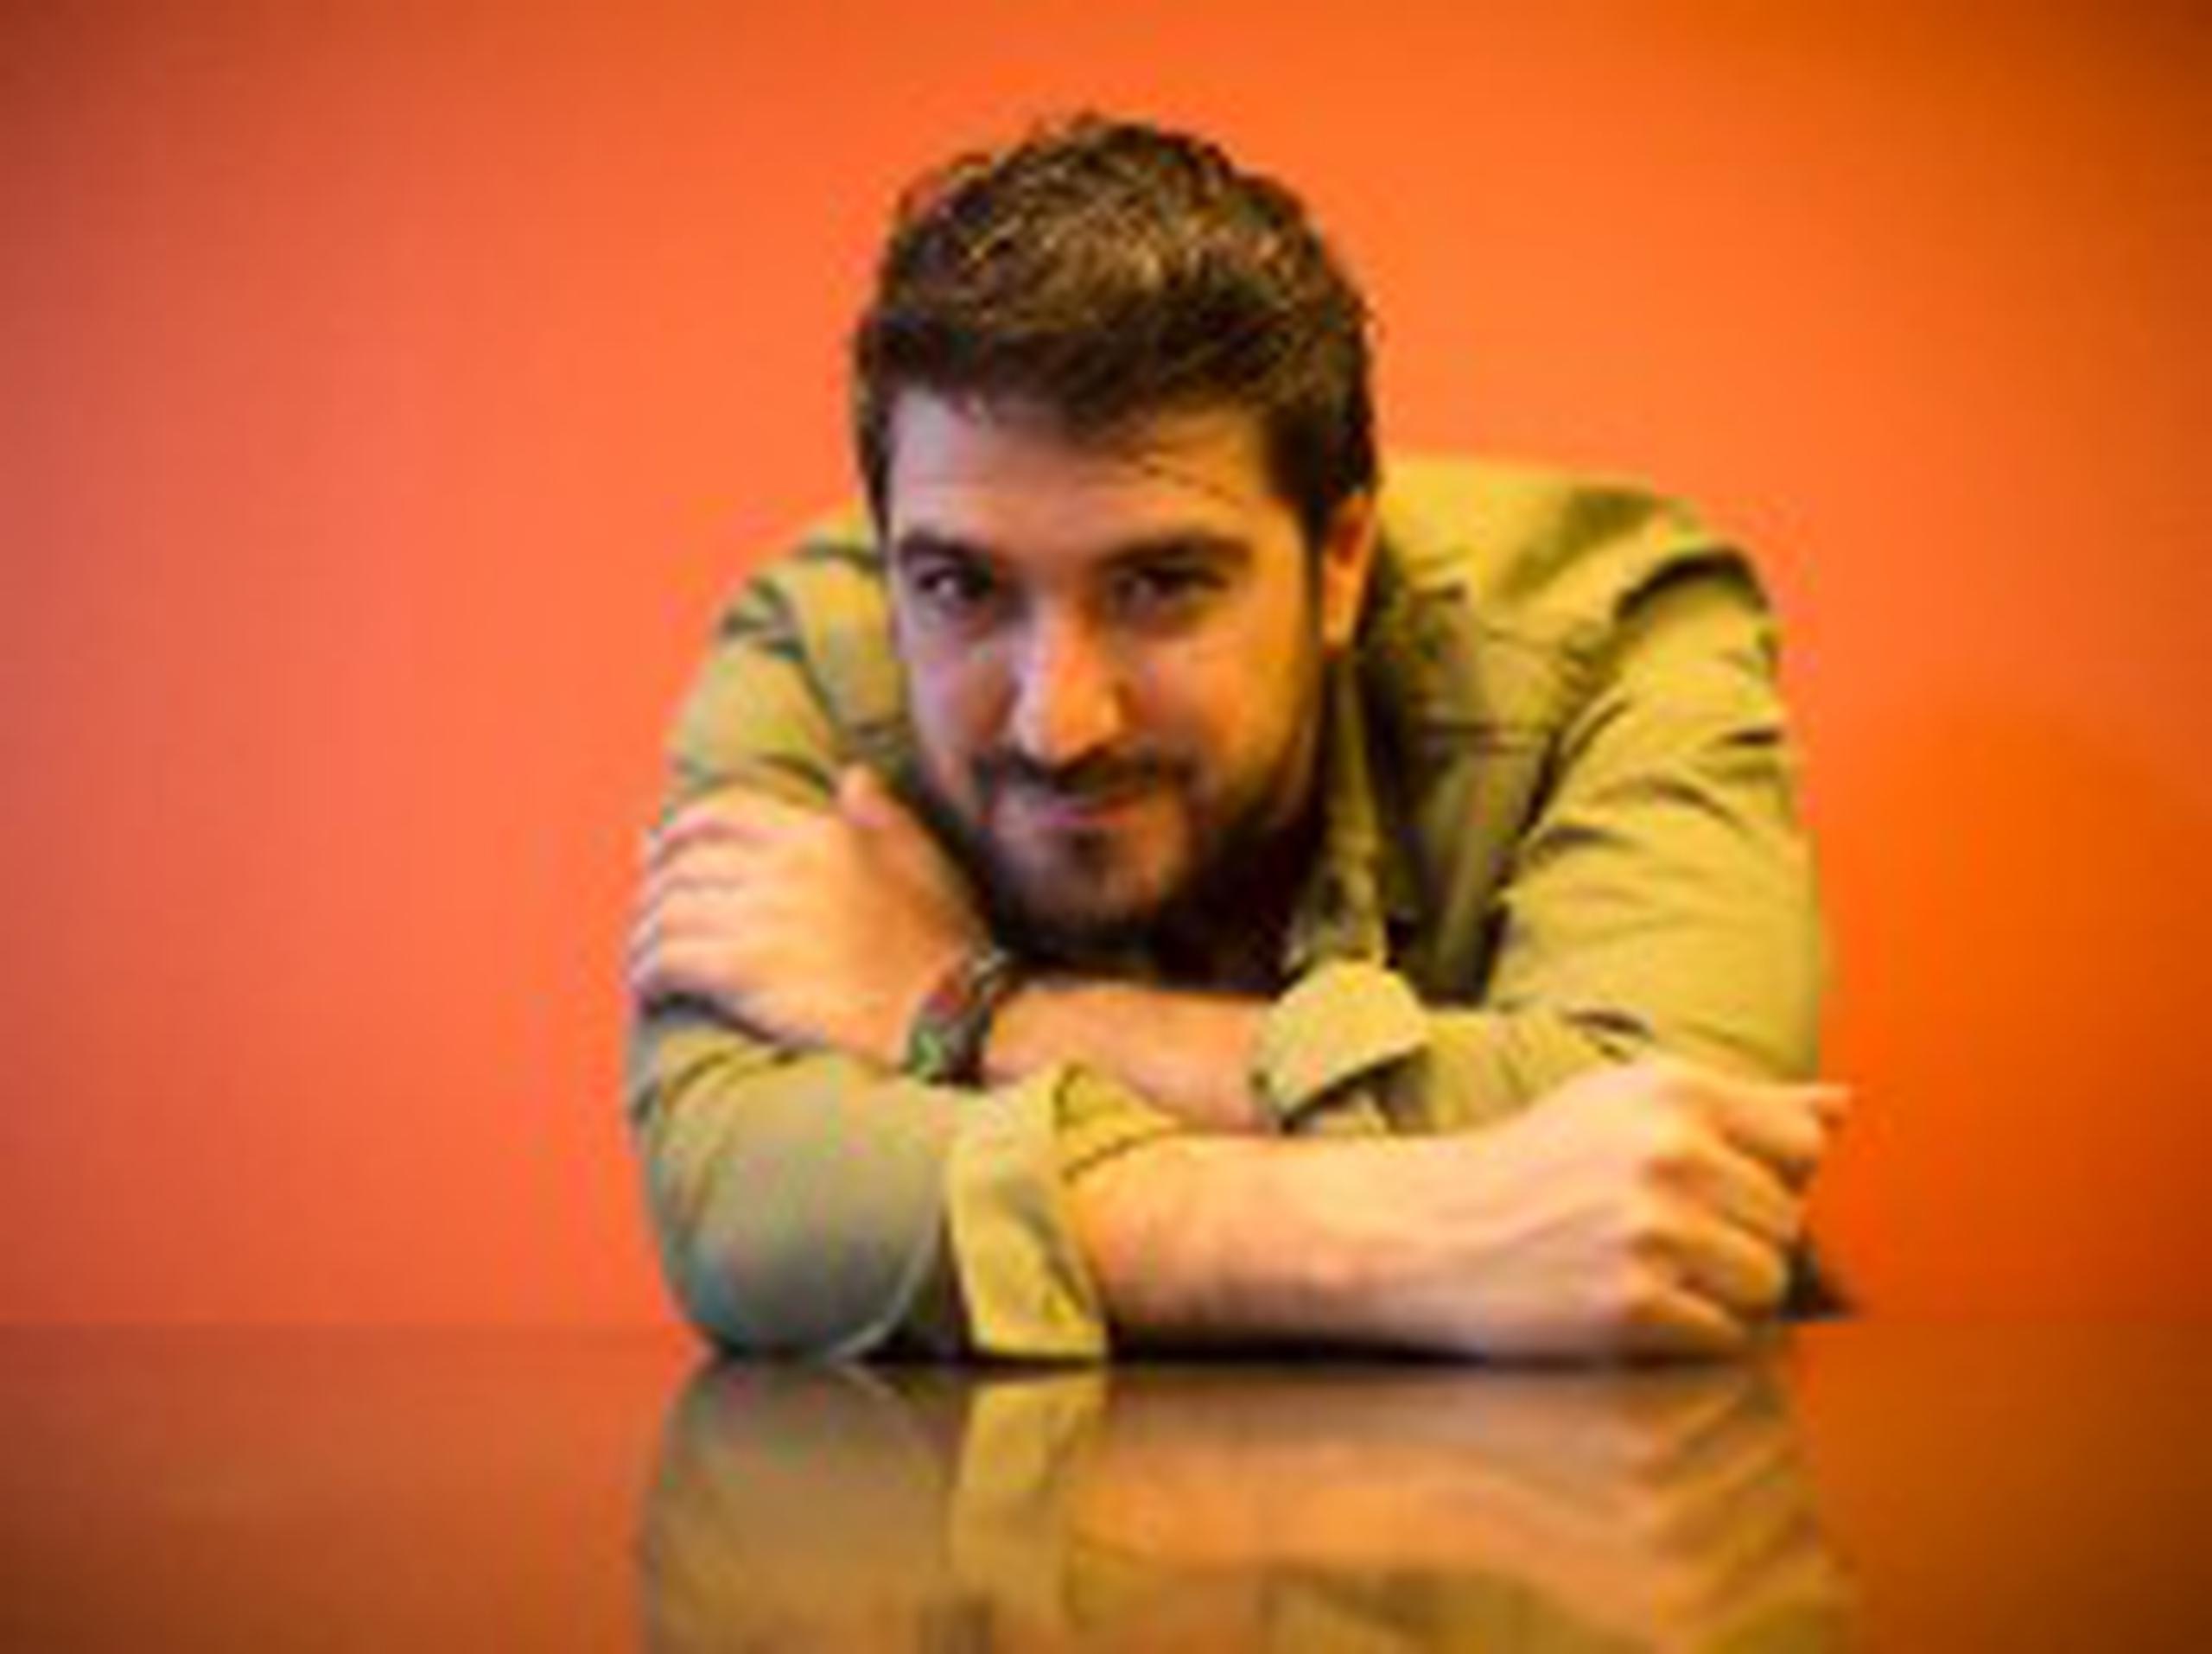 Previo  al lanzamiento del disco, Antonio Orozco  había  lanzado los  sencillos “Llegará” y  “Temblando”. (Archivo/tonito.zayas@gfrmedia.com)
